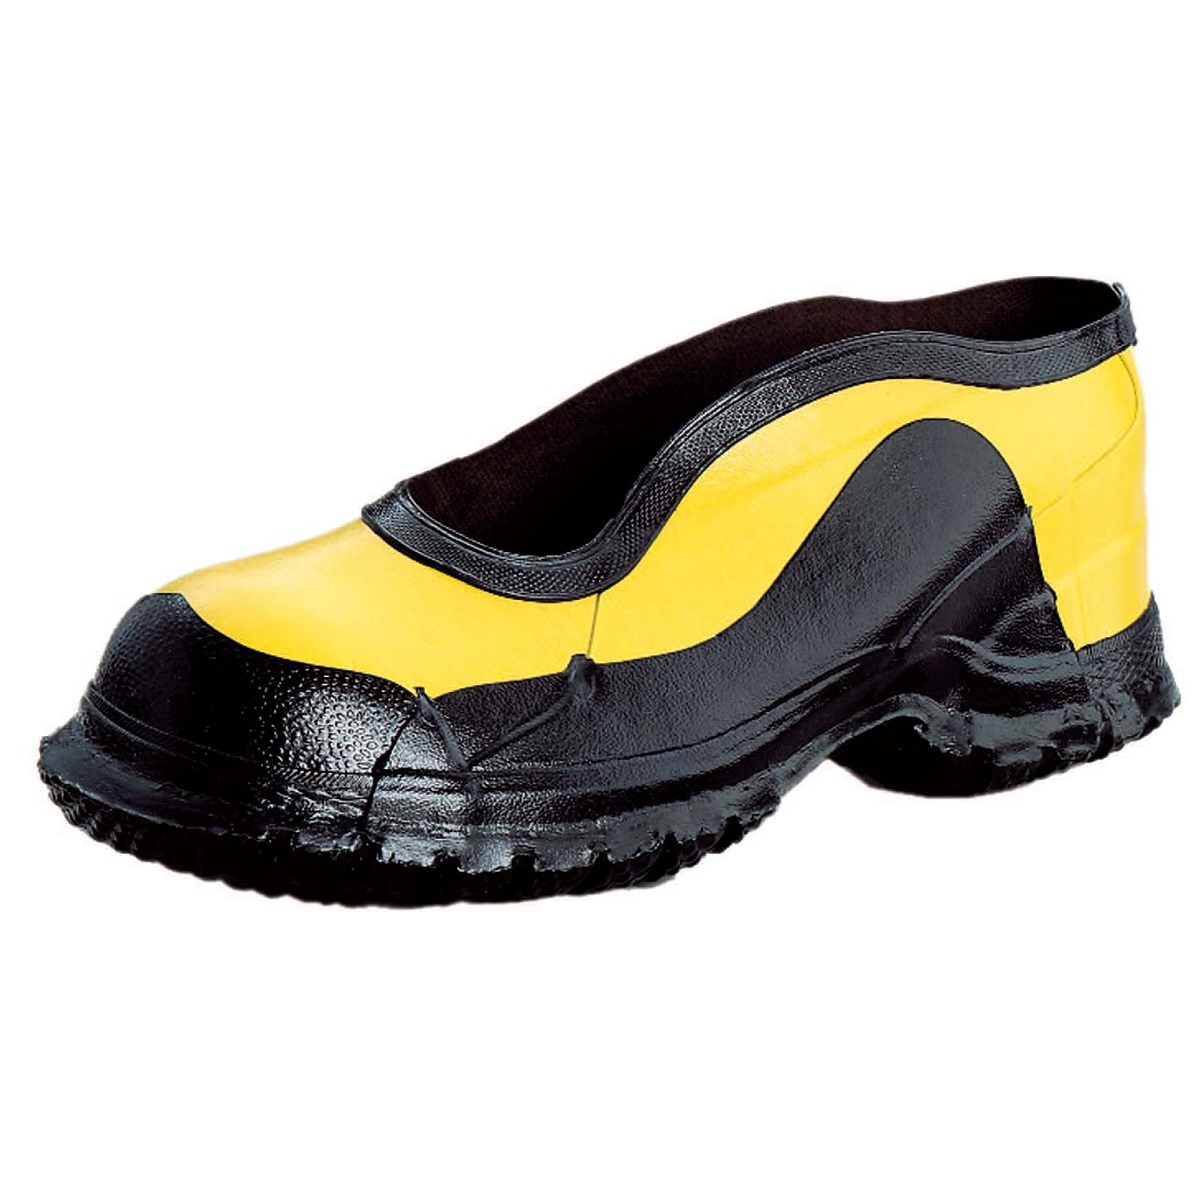 Honeywell Size 13 Salisbury Black/Yellow Rubber No Buckle Deep Heel Storm Overshoes With Fabric Lining